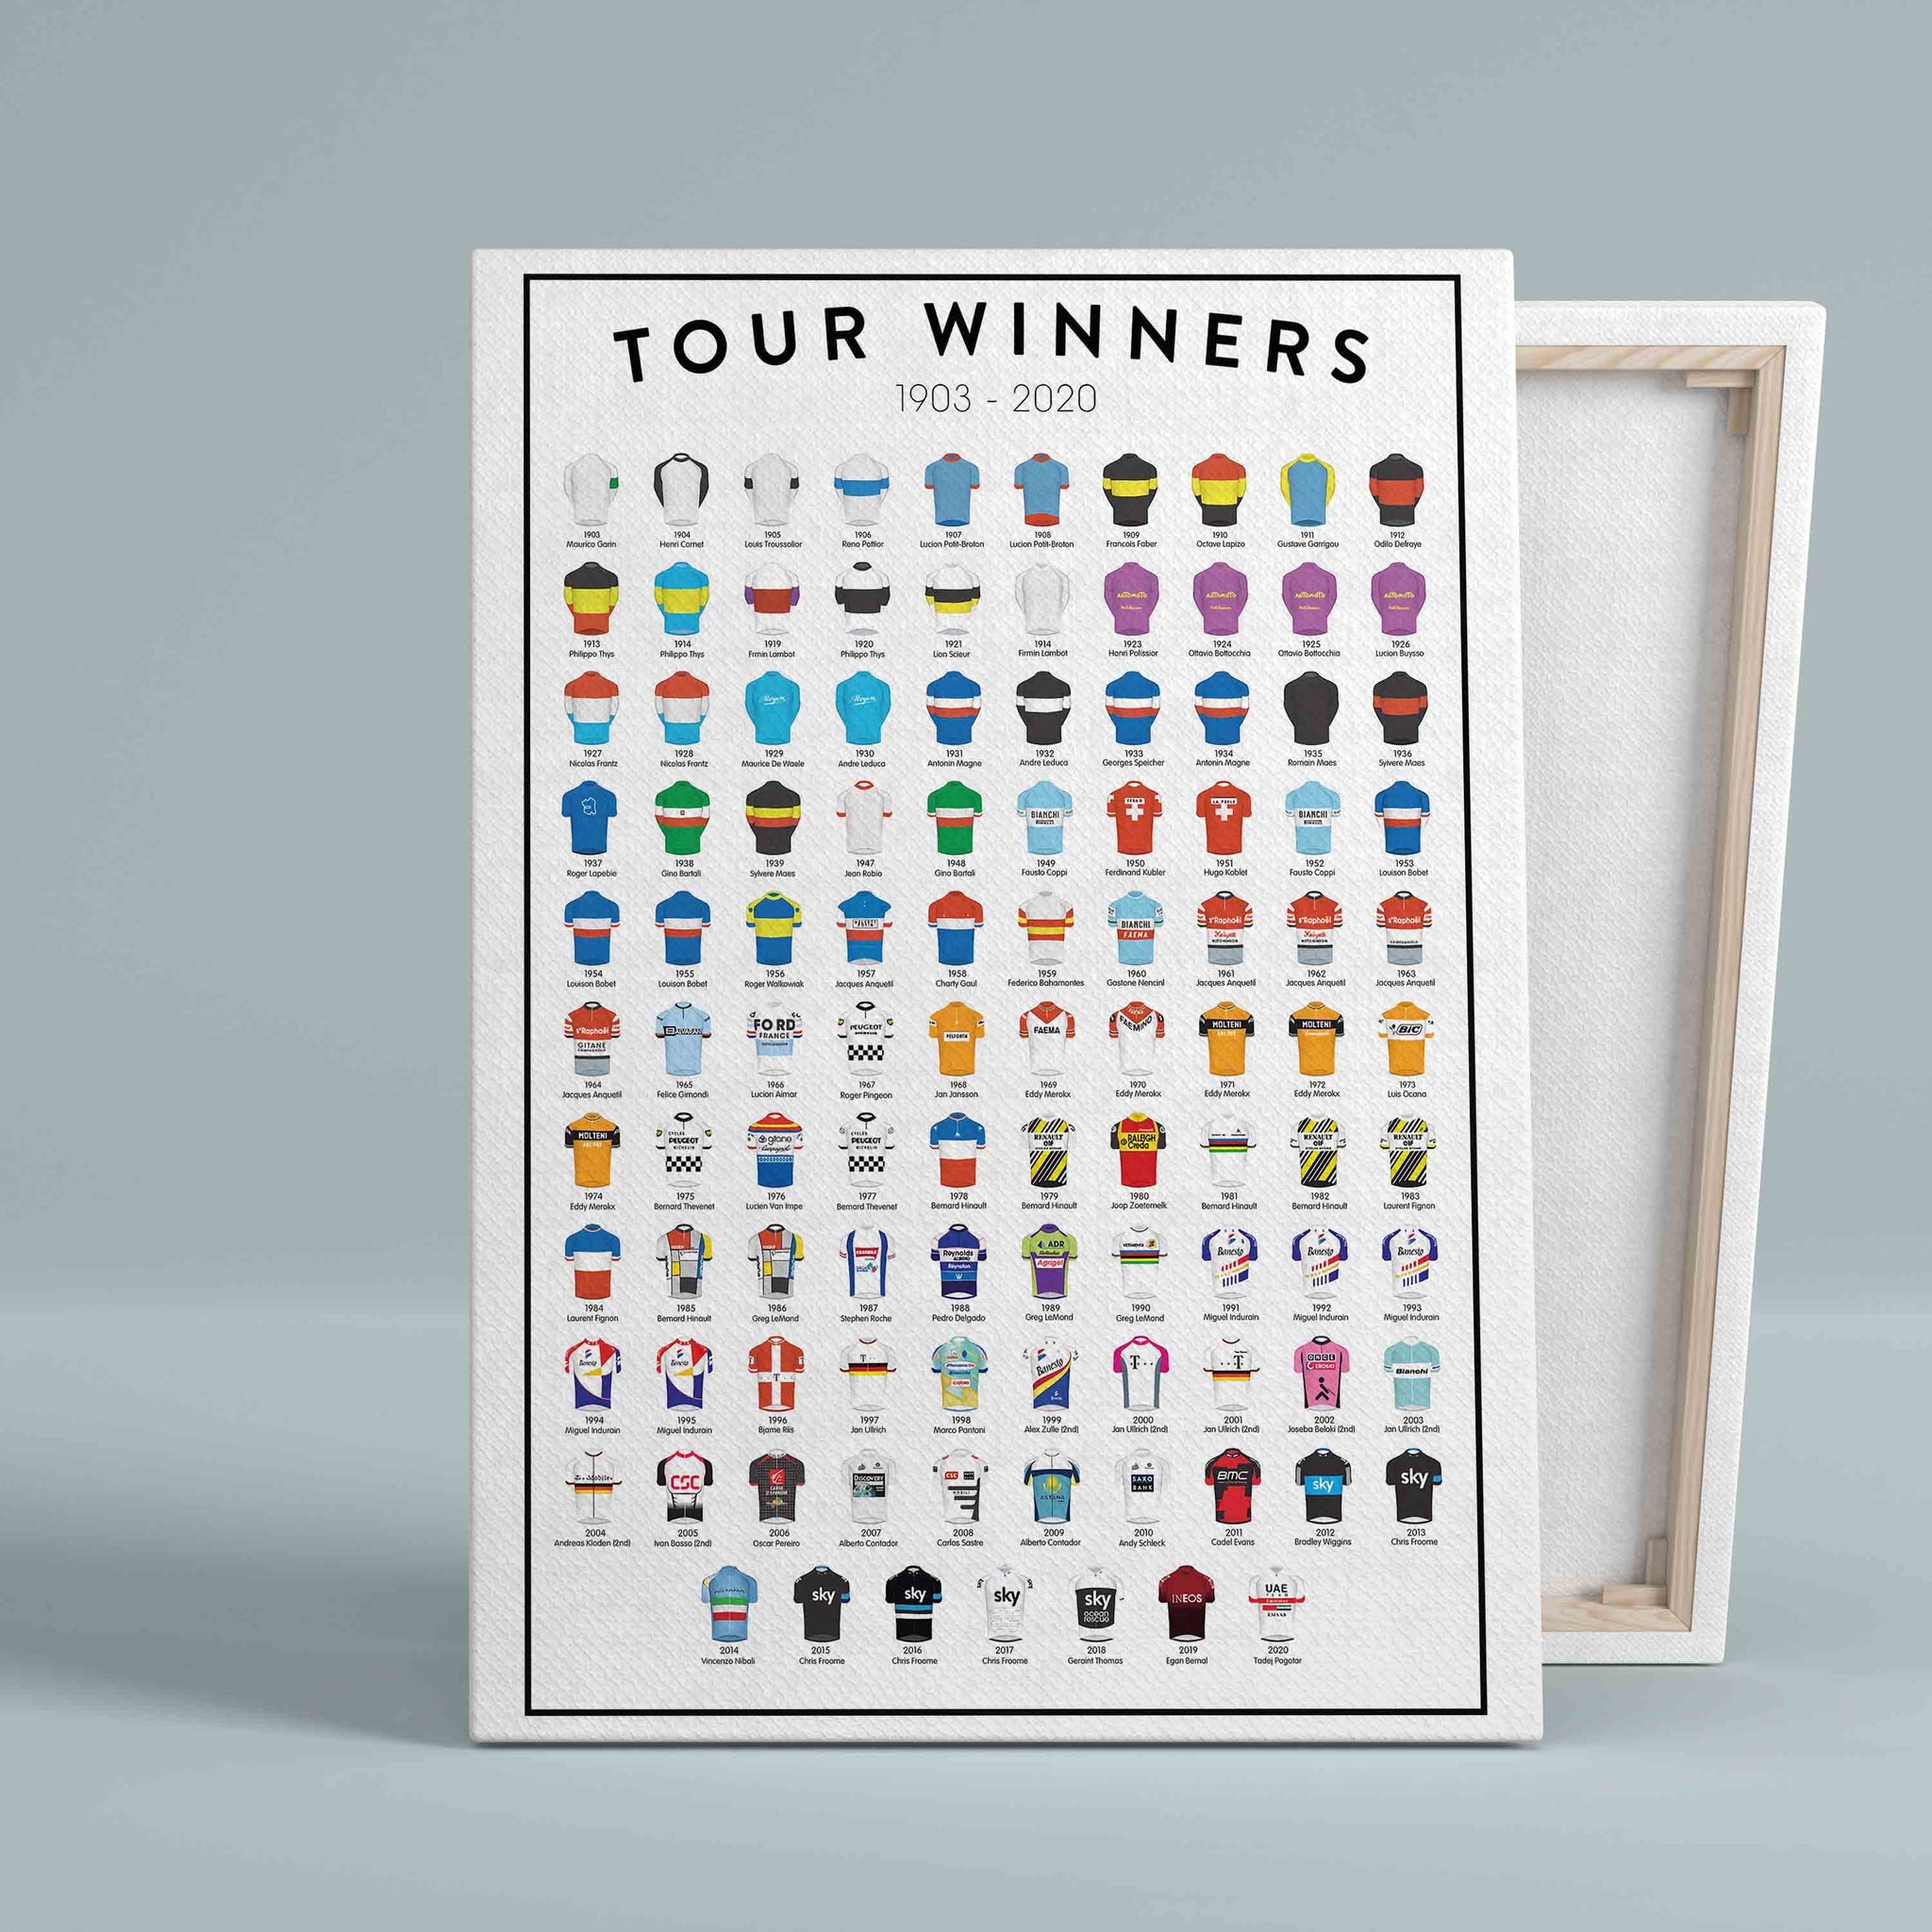 Tour de France Canvas, Tour Winners 1903-2020 Canvas, Wall Art Canvas, Gift Canvas